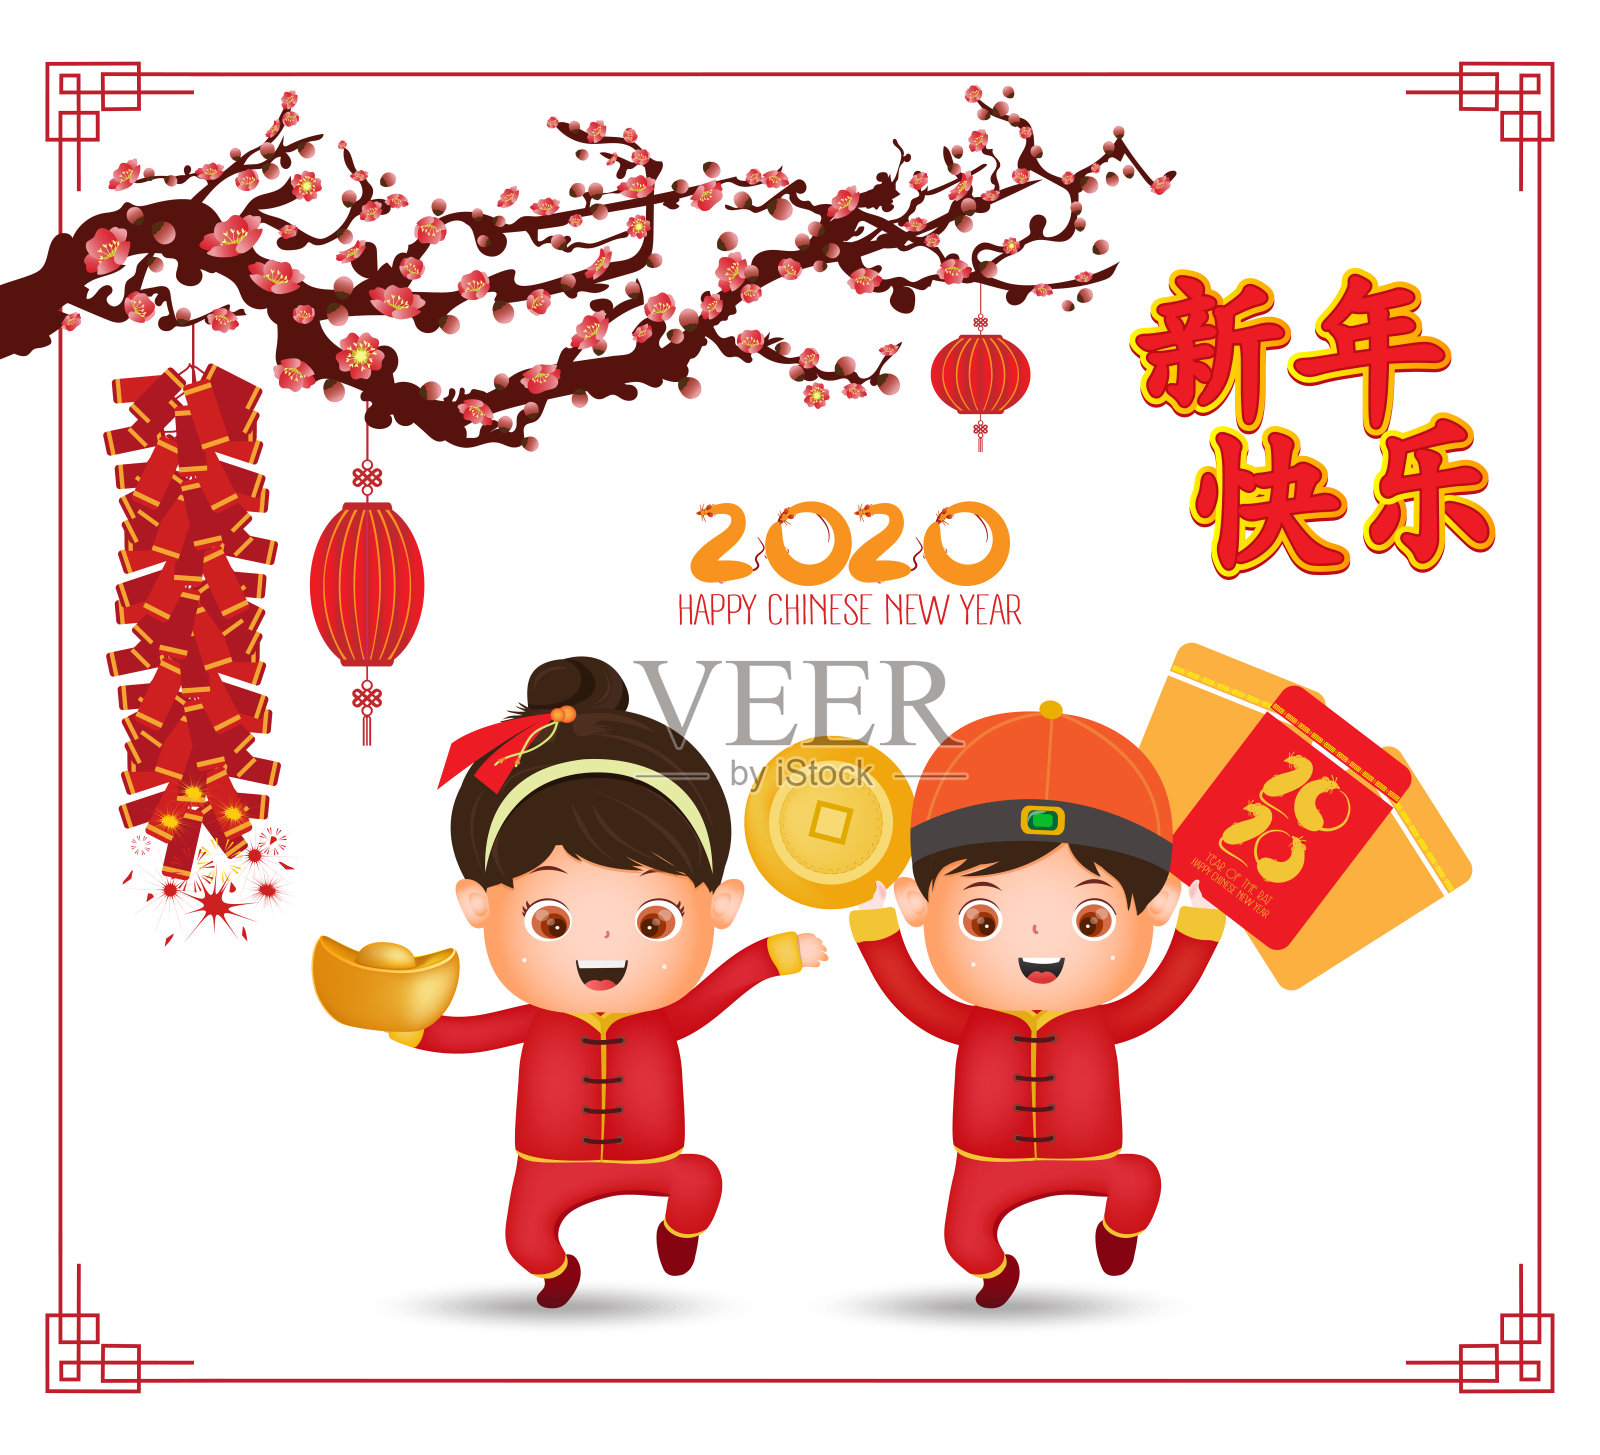 2020年中国新年——鼠年的横幅设计。可爱的卡通中国孩子和老鼠与灯笼和梅花树与春天的背景。Chinese new year中国新年插画图片素材